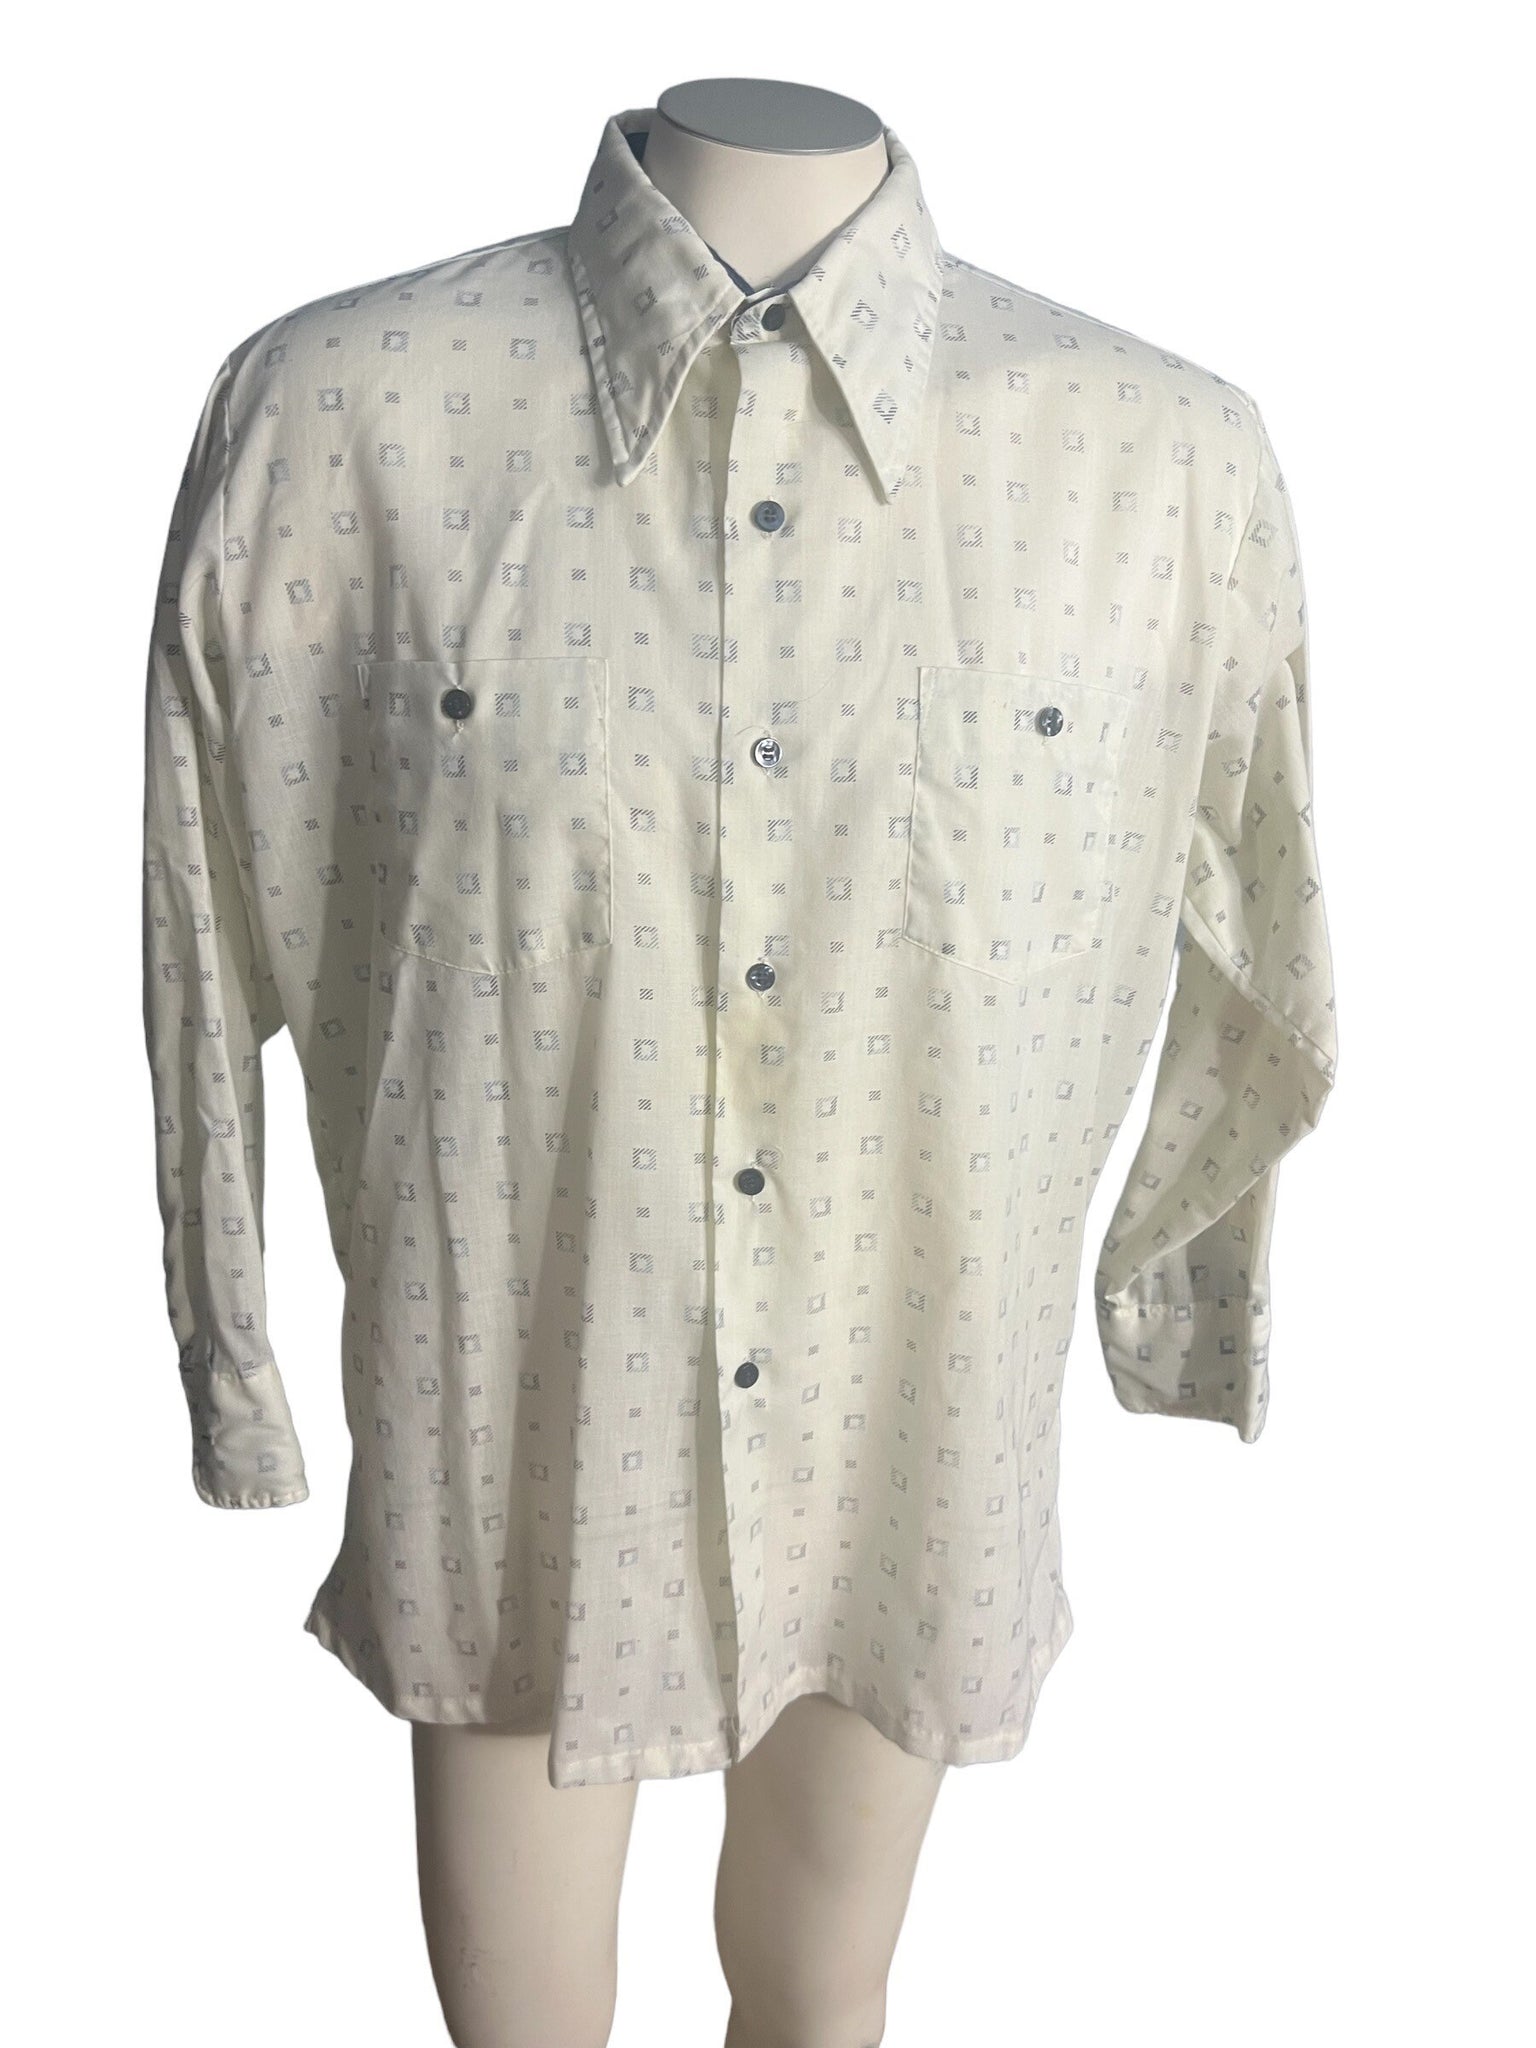 Vintage 70's men's shirt Paul Arnold 16.5 33